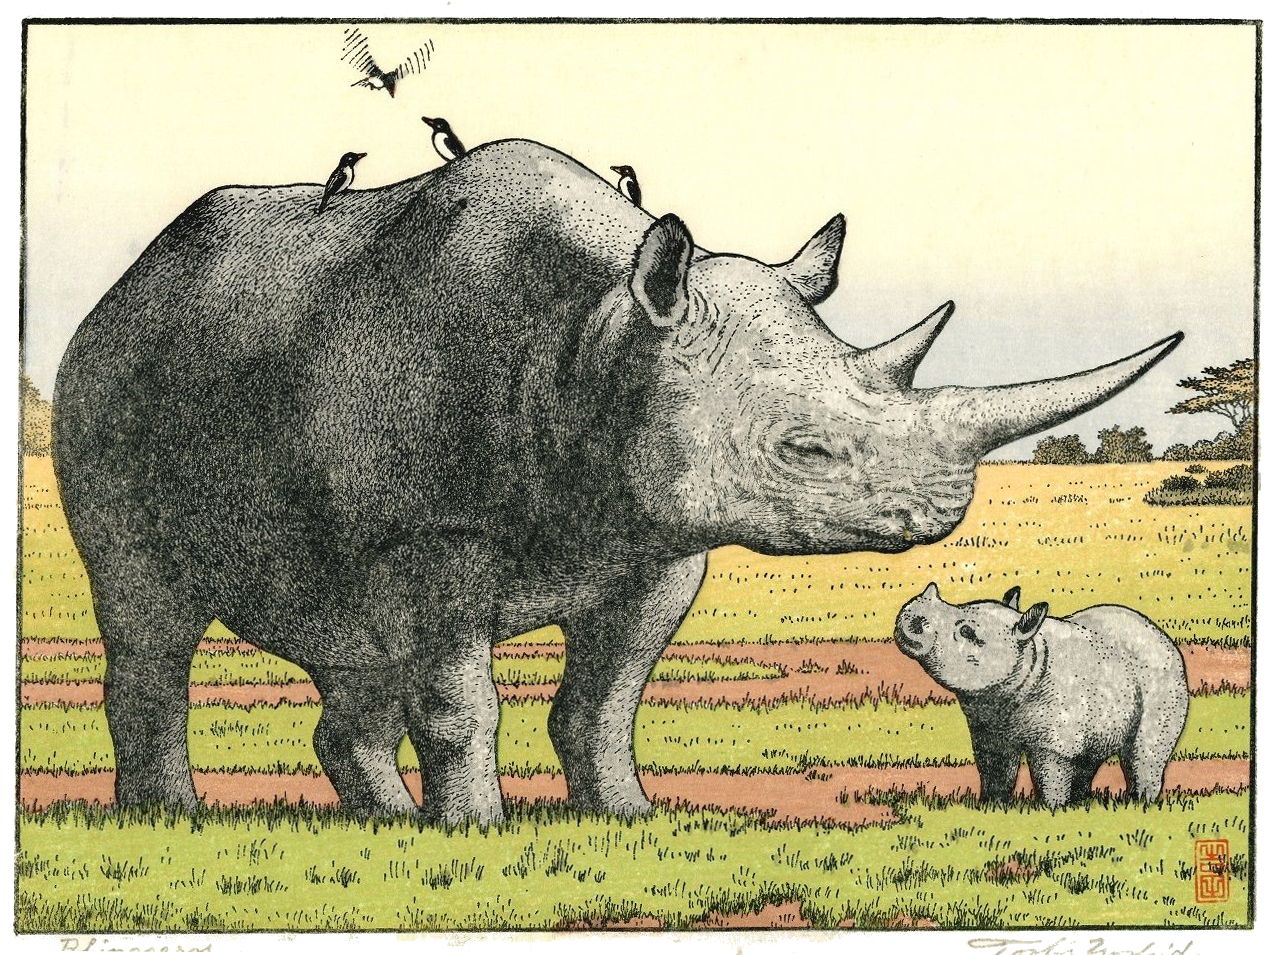 Toshi Yoshida “Rhinoceros”  woodblock print